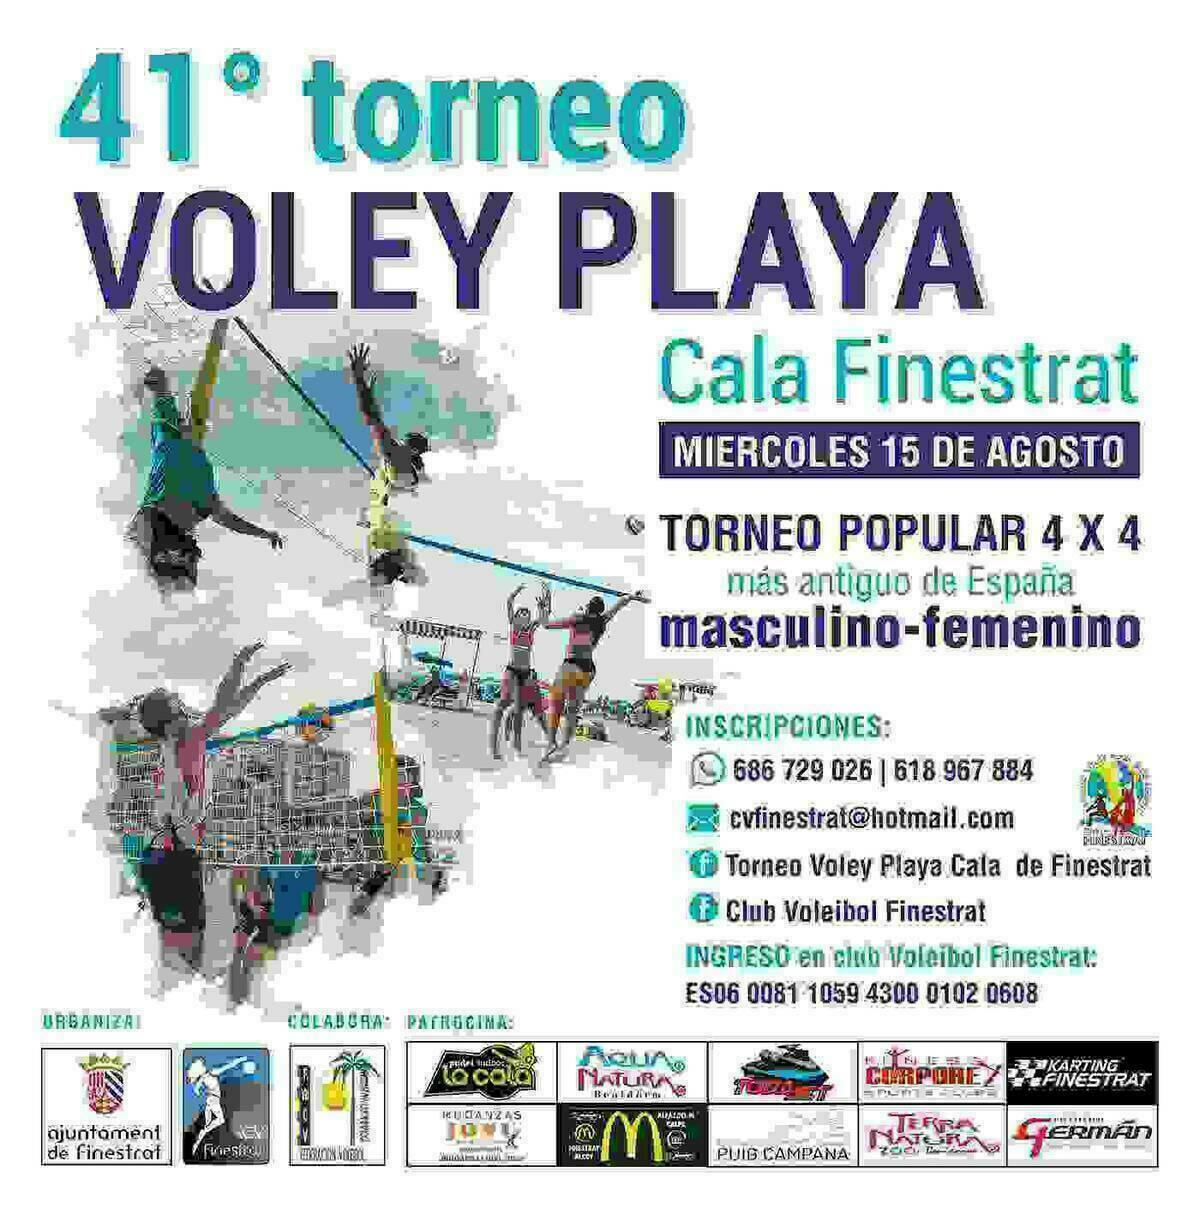 Cuenta atrás para el torneo de voley playa más antiguo de España que se celebra cada 15 de agosto en la Cala de Finestrat